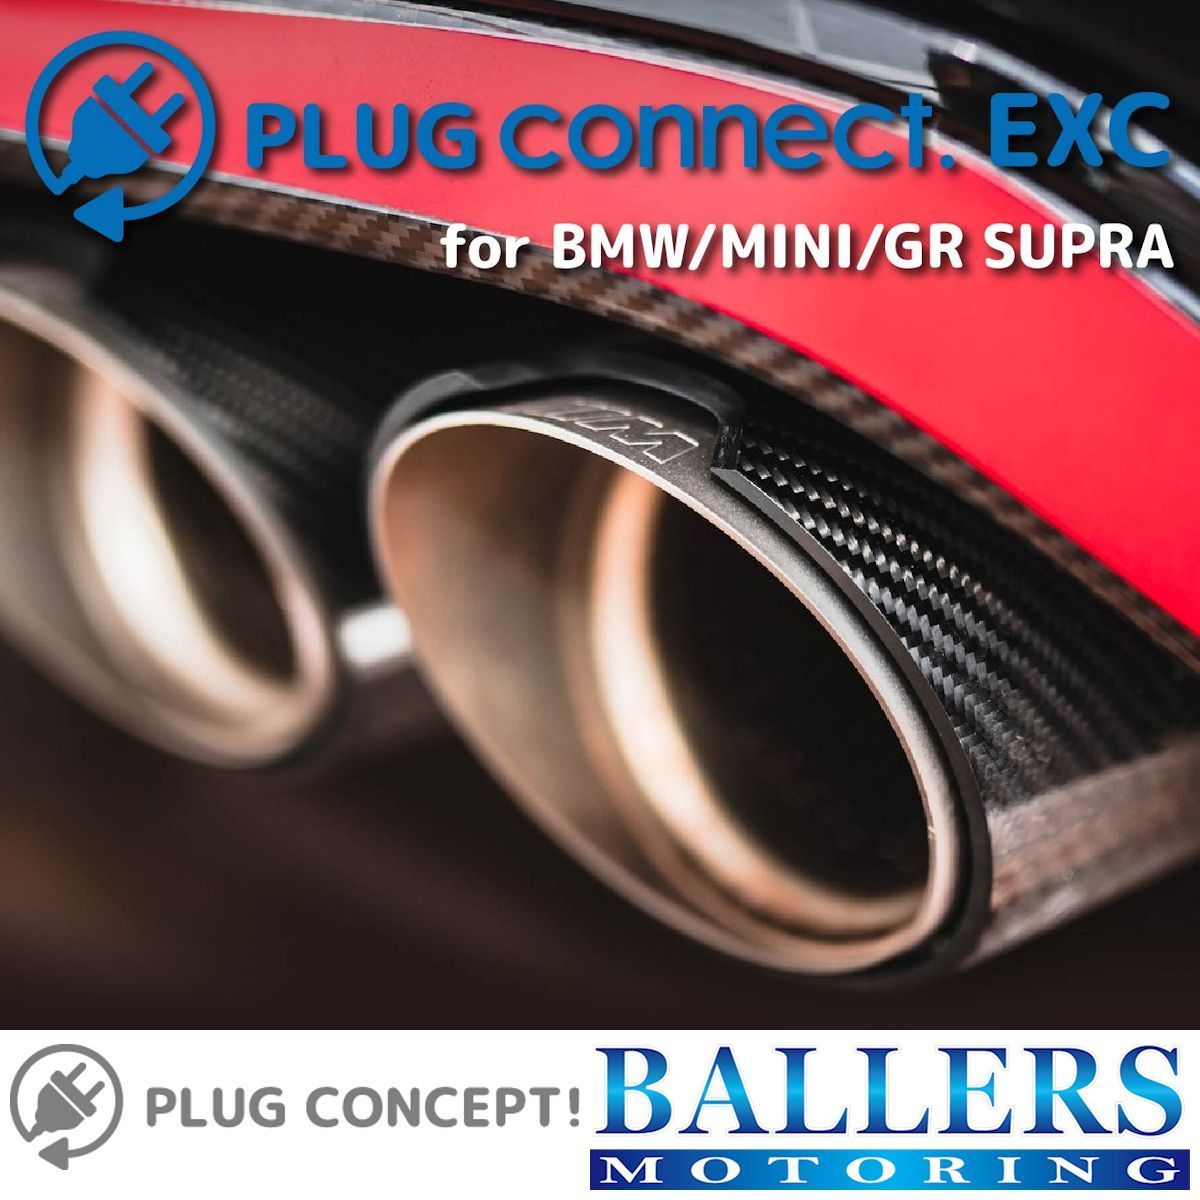 PLUG connect. EXC BMW i8 I12 I15 エキゾーストバルブコントローラー 差し込むだけで設定完了！ OBD2 日本製